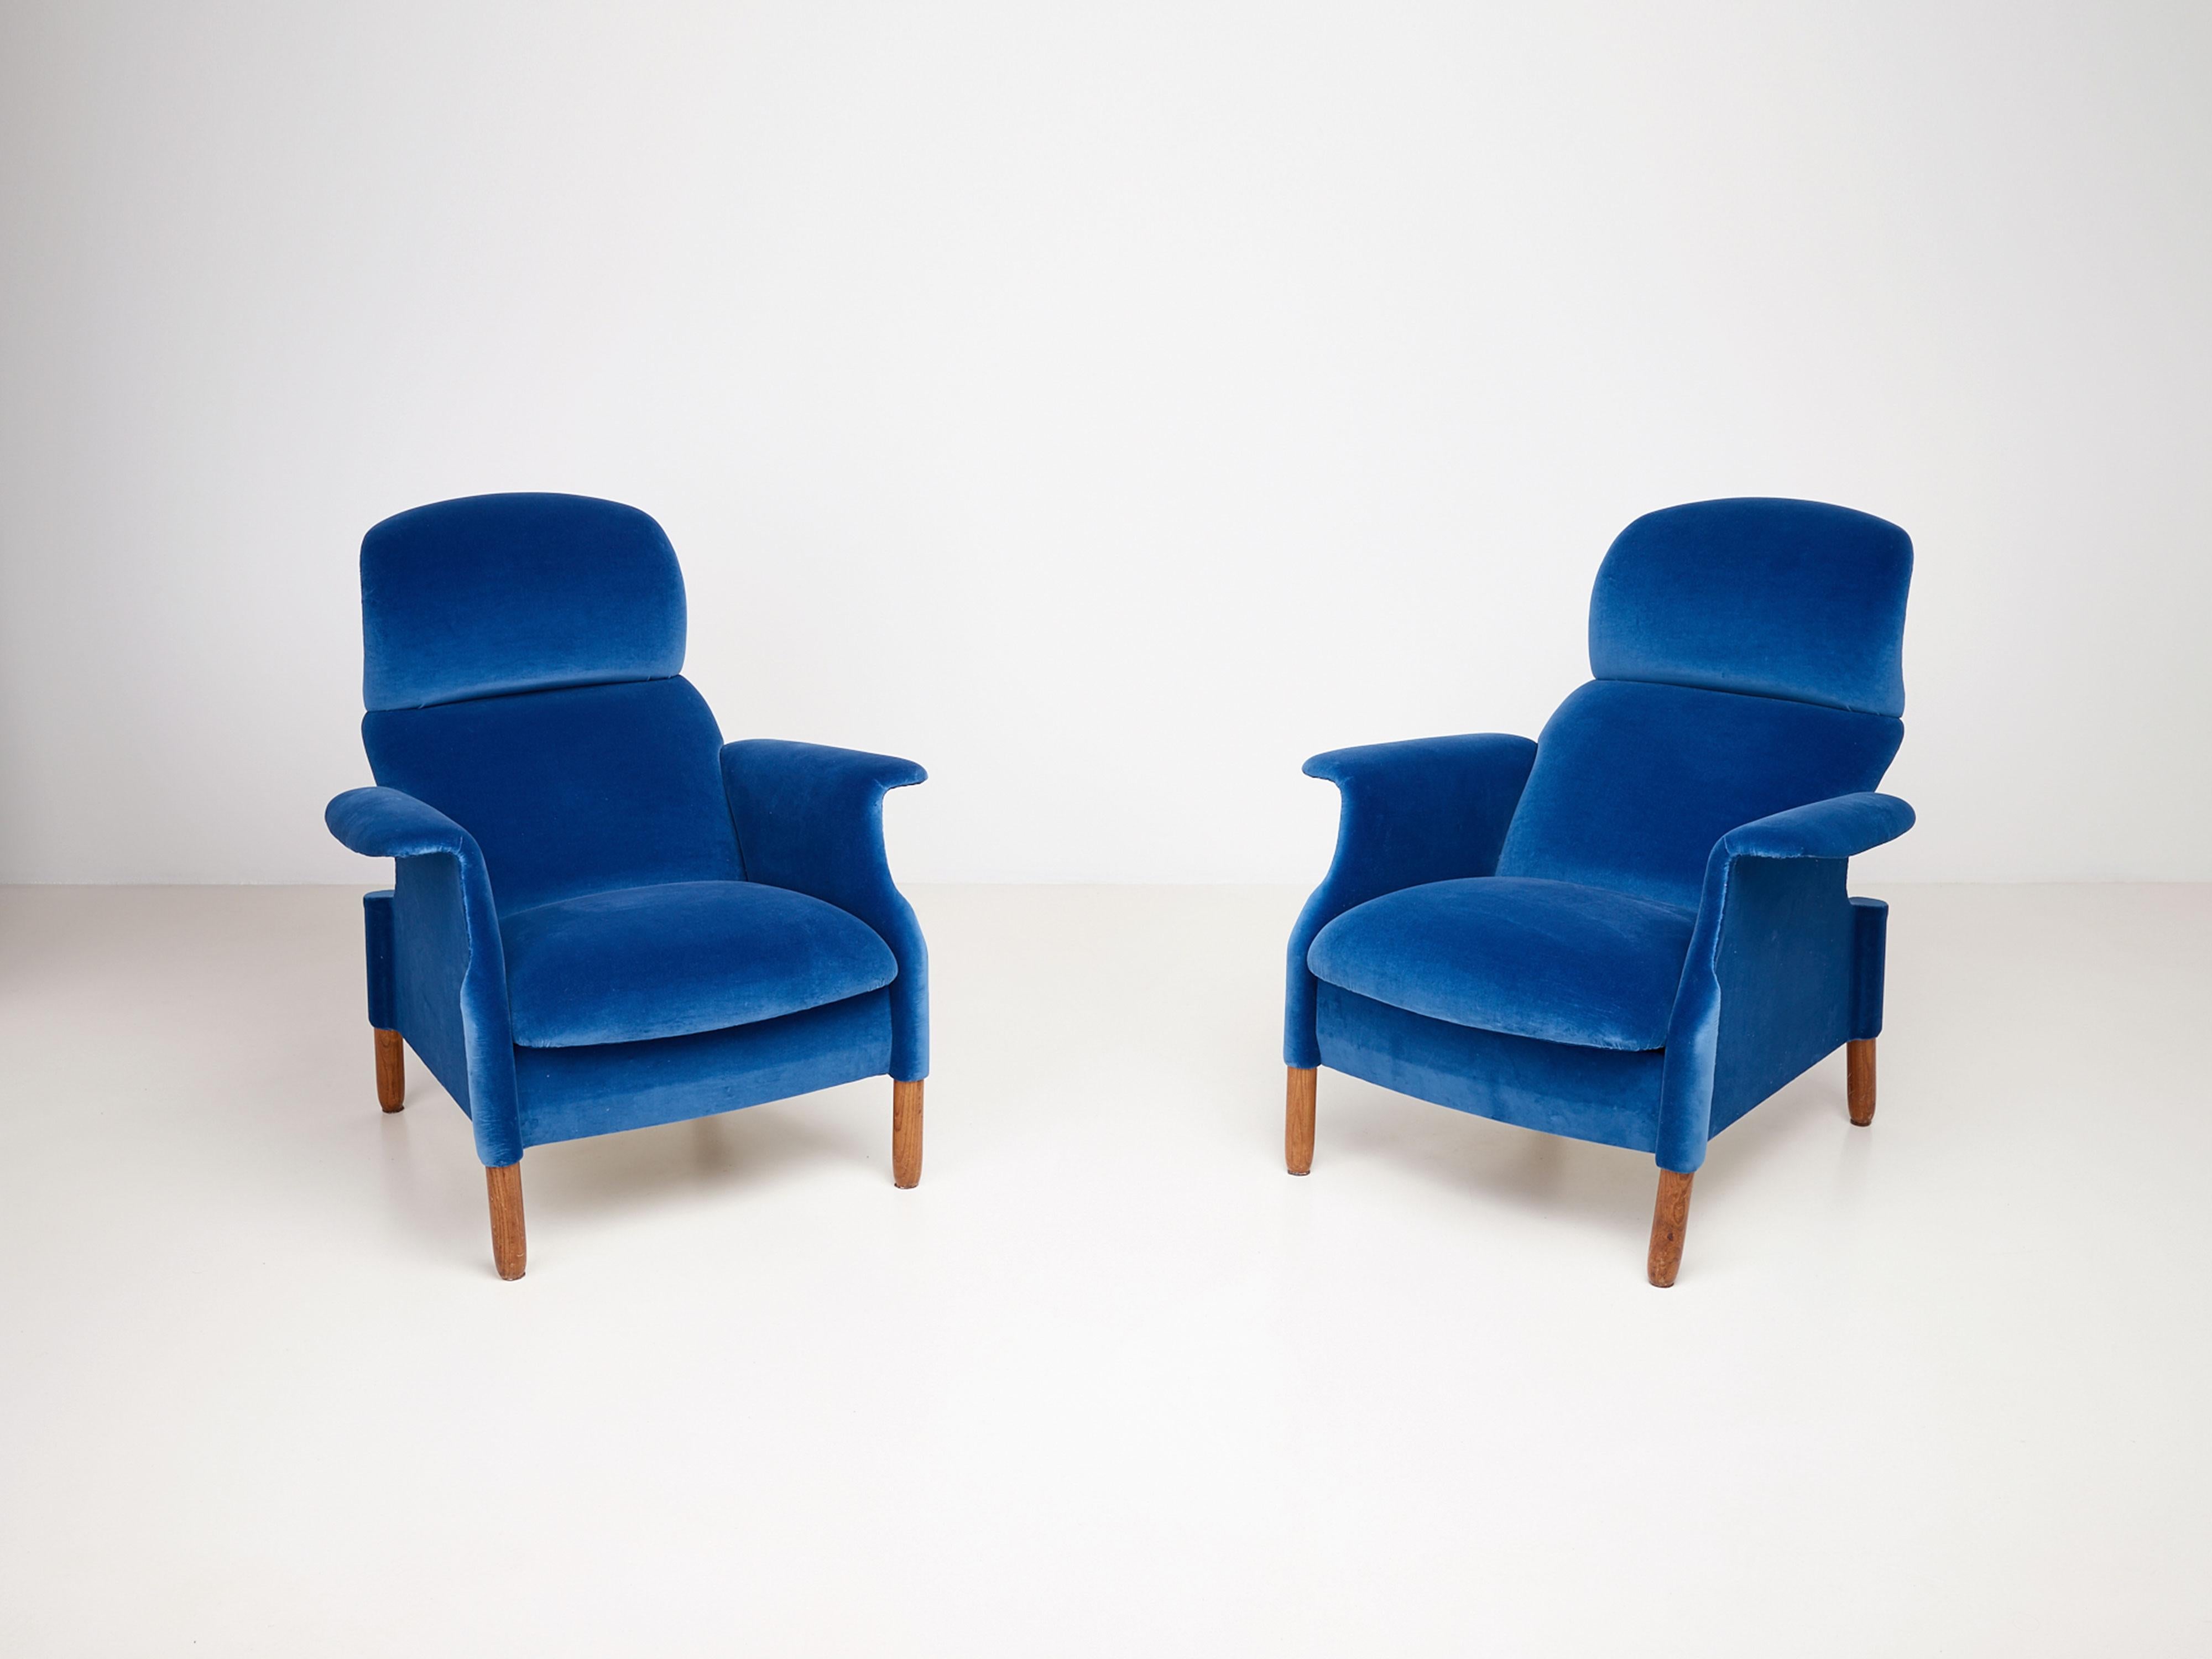 Ein Paar Sanluca-Sessel von Achille und Pier Giacomo Castiglioni aus der Produktion von Gavina, kürzlich mit Baumwollsamt bezogen. Jeder Sessel besteht aus einzelnen gebogenen Holzteilen, die durch Schrauben miteinander verbunden sind.